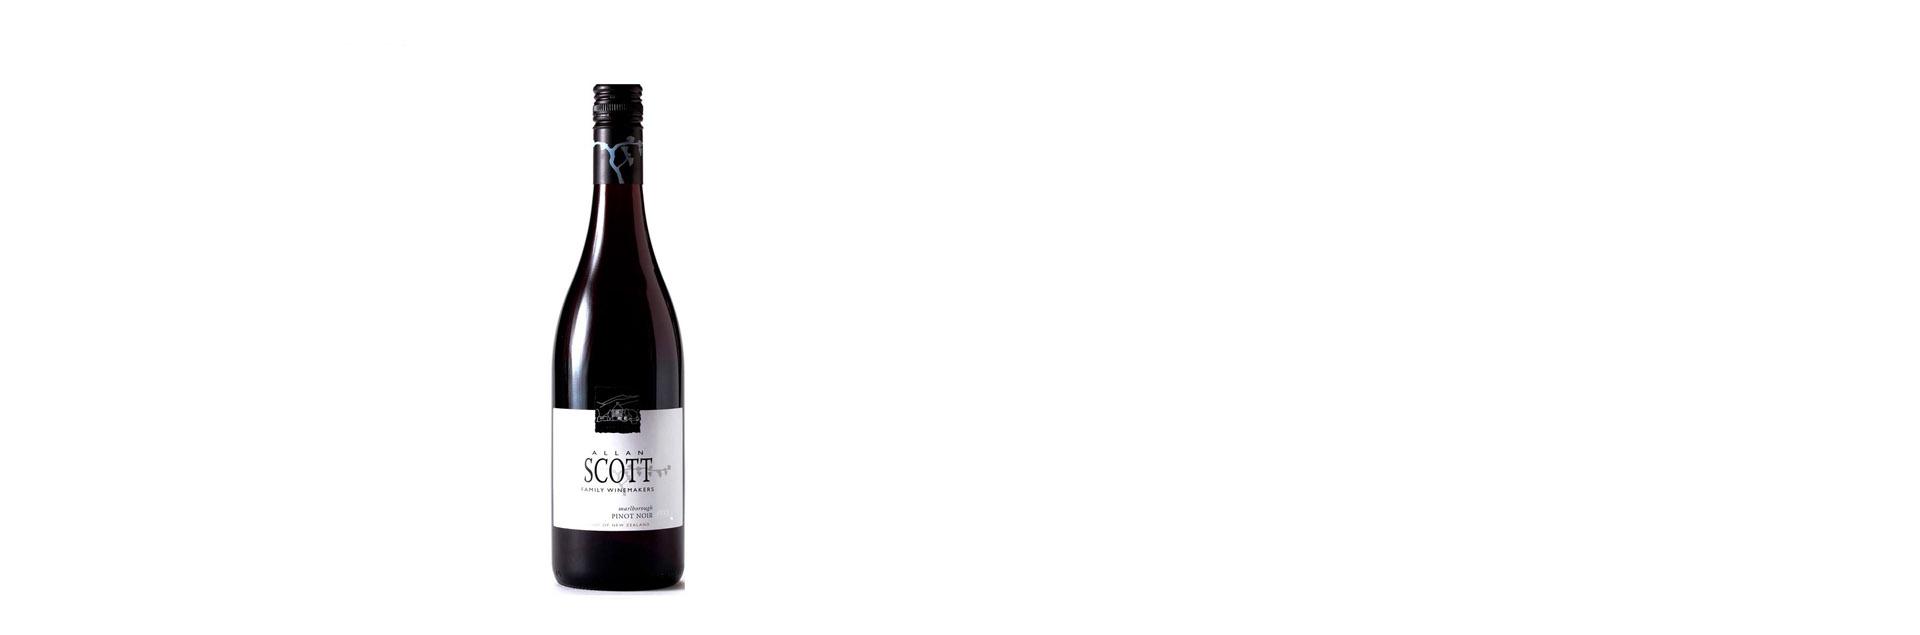 Rượu vang New-Zealand Allan Scott - Pinot Noir